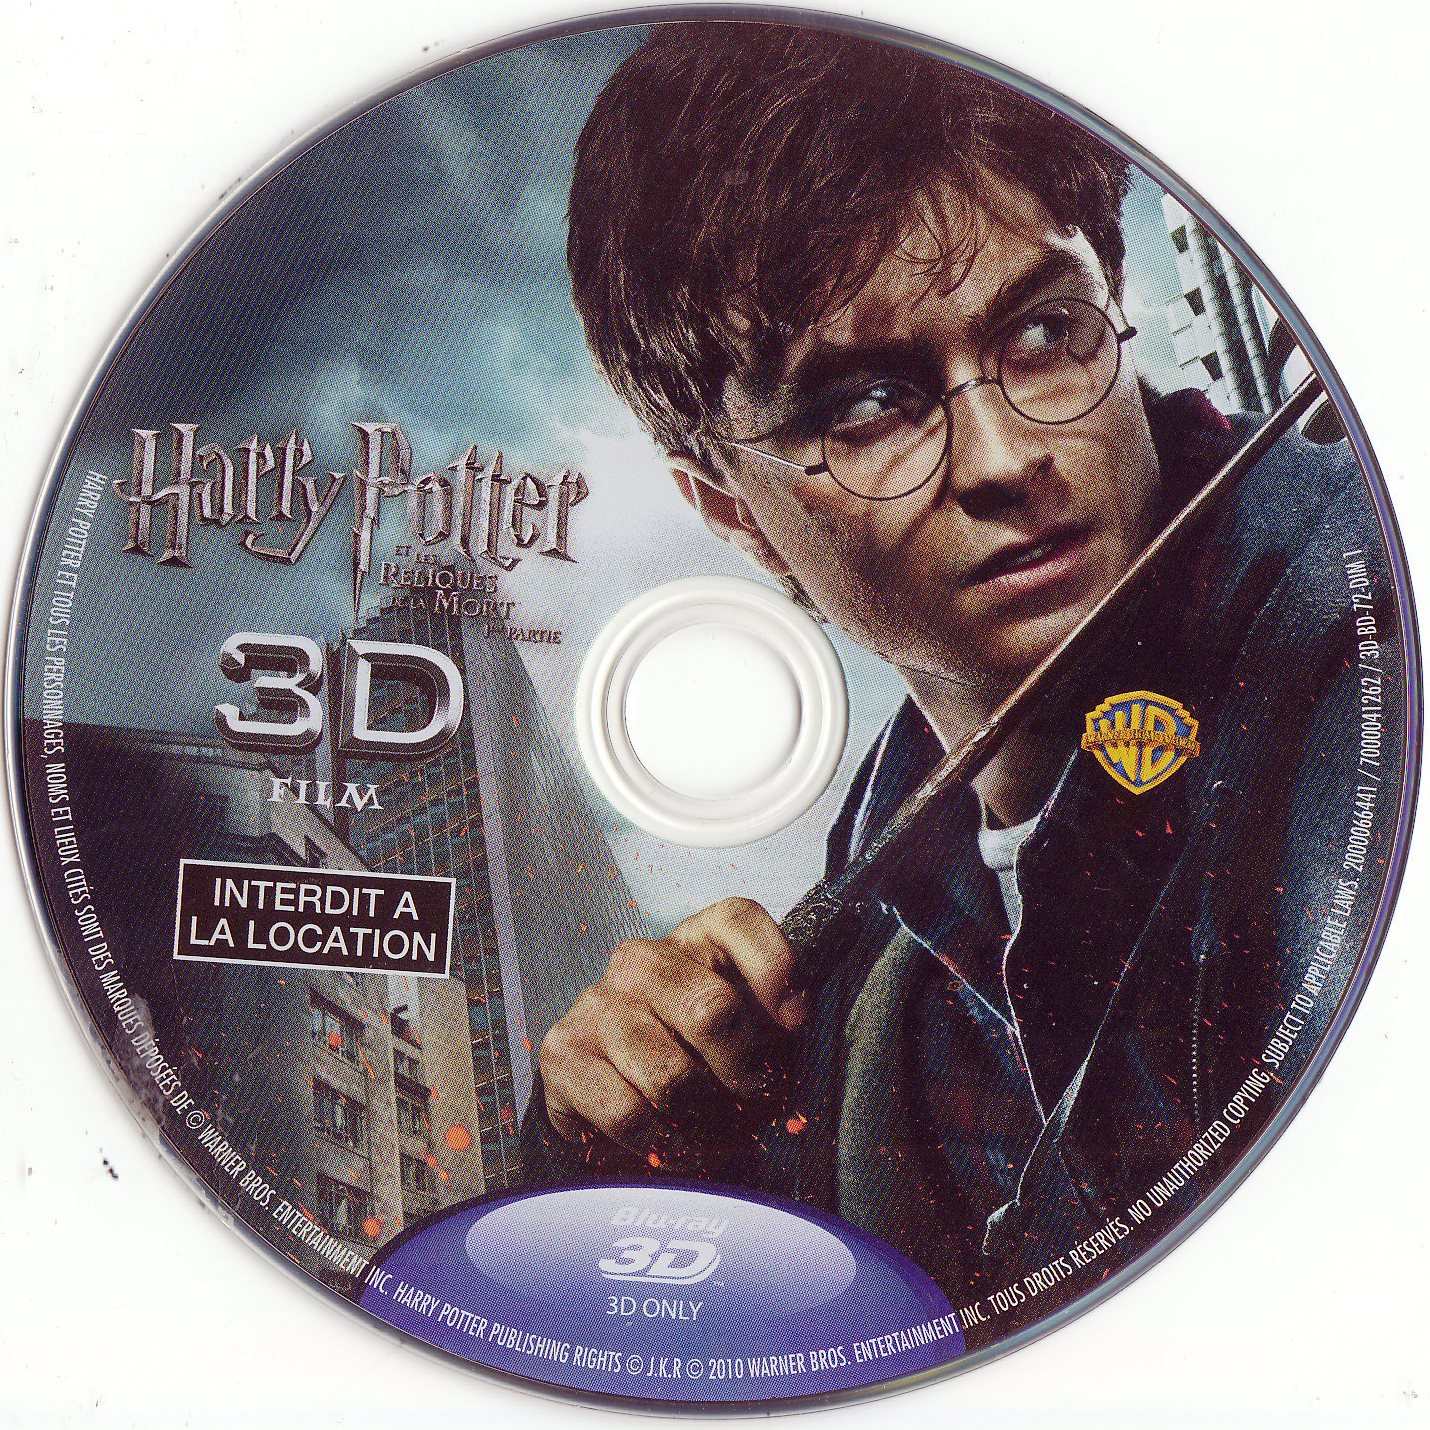 Harry Potter et les reliques de la mort - 1re partie 3D (BLU-RAY)